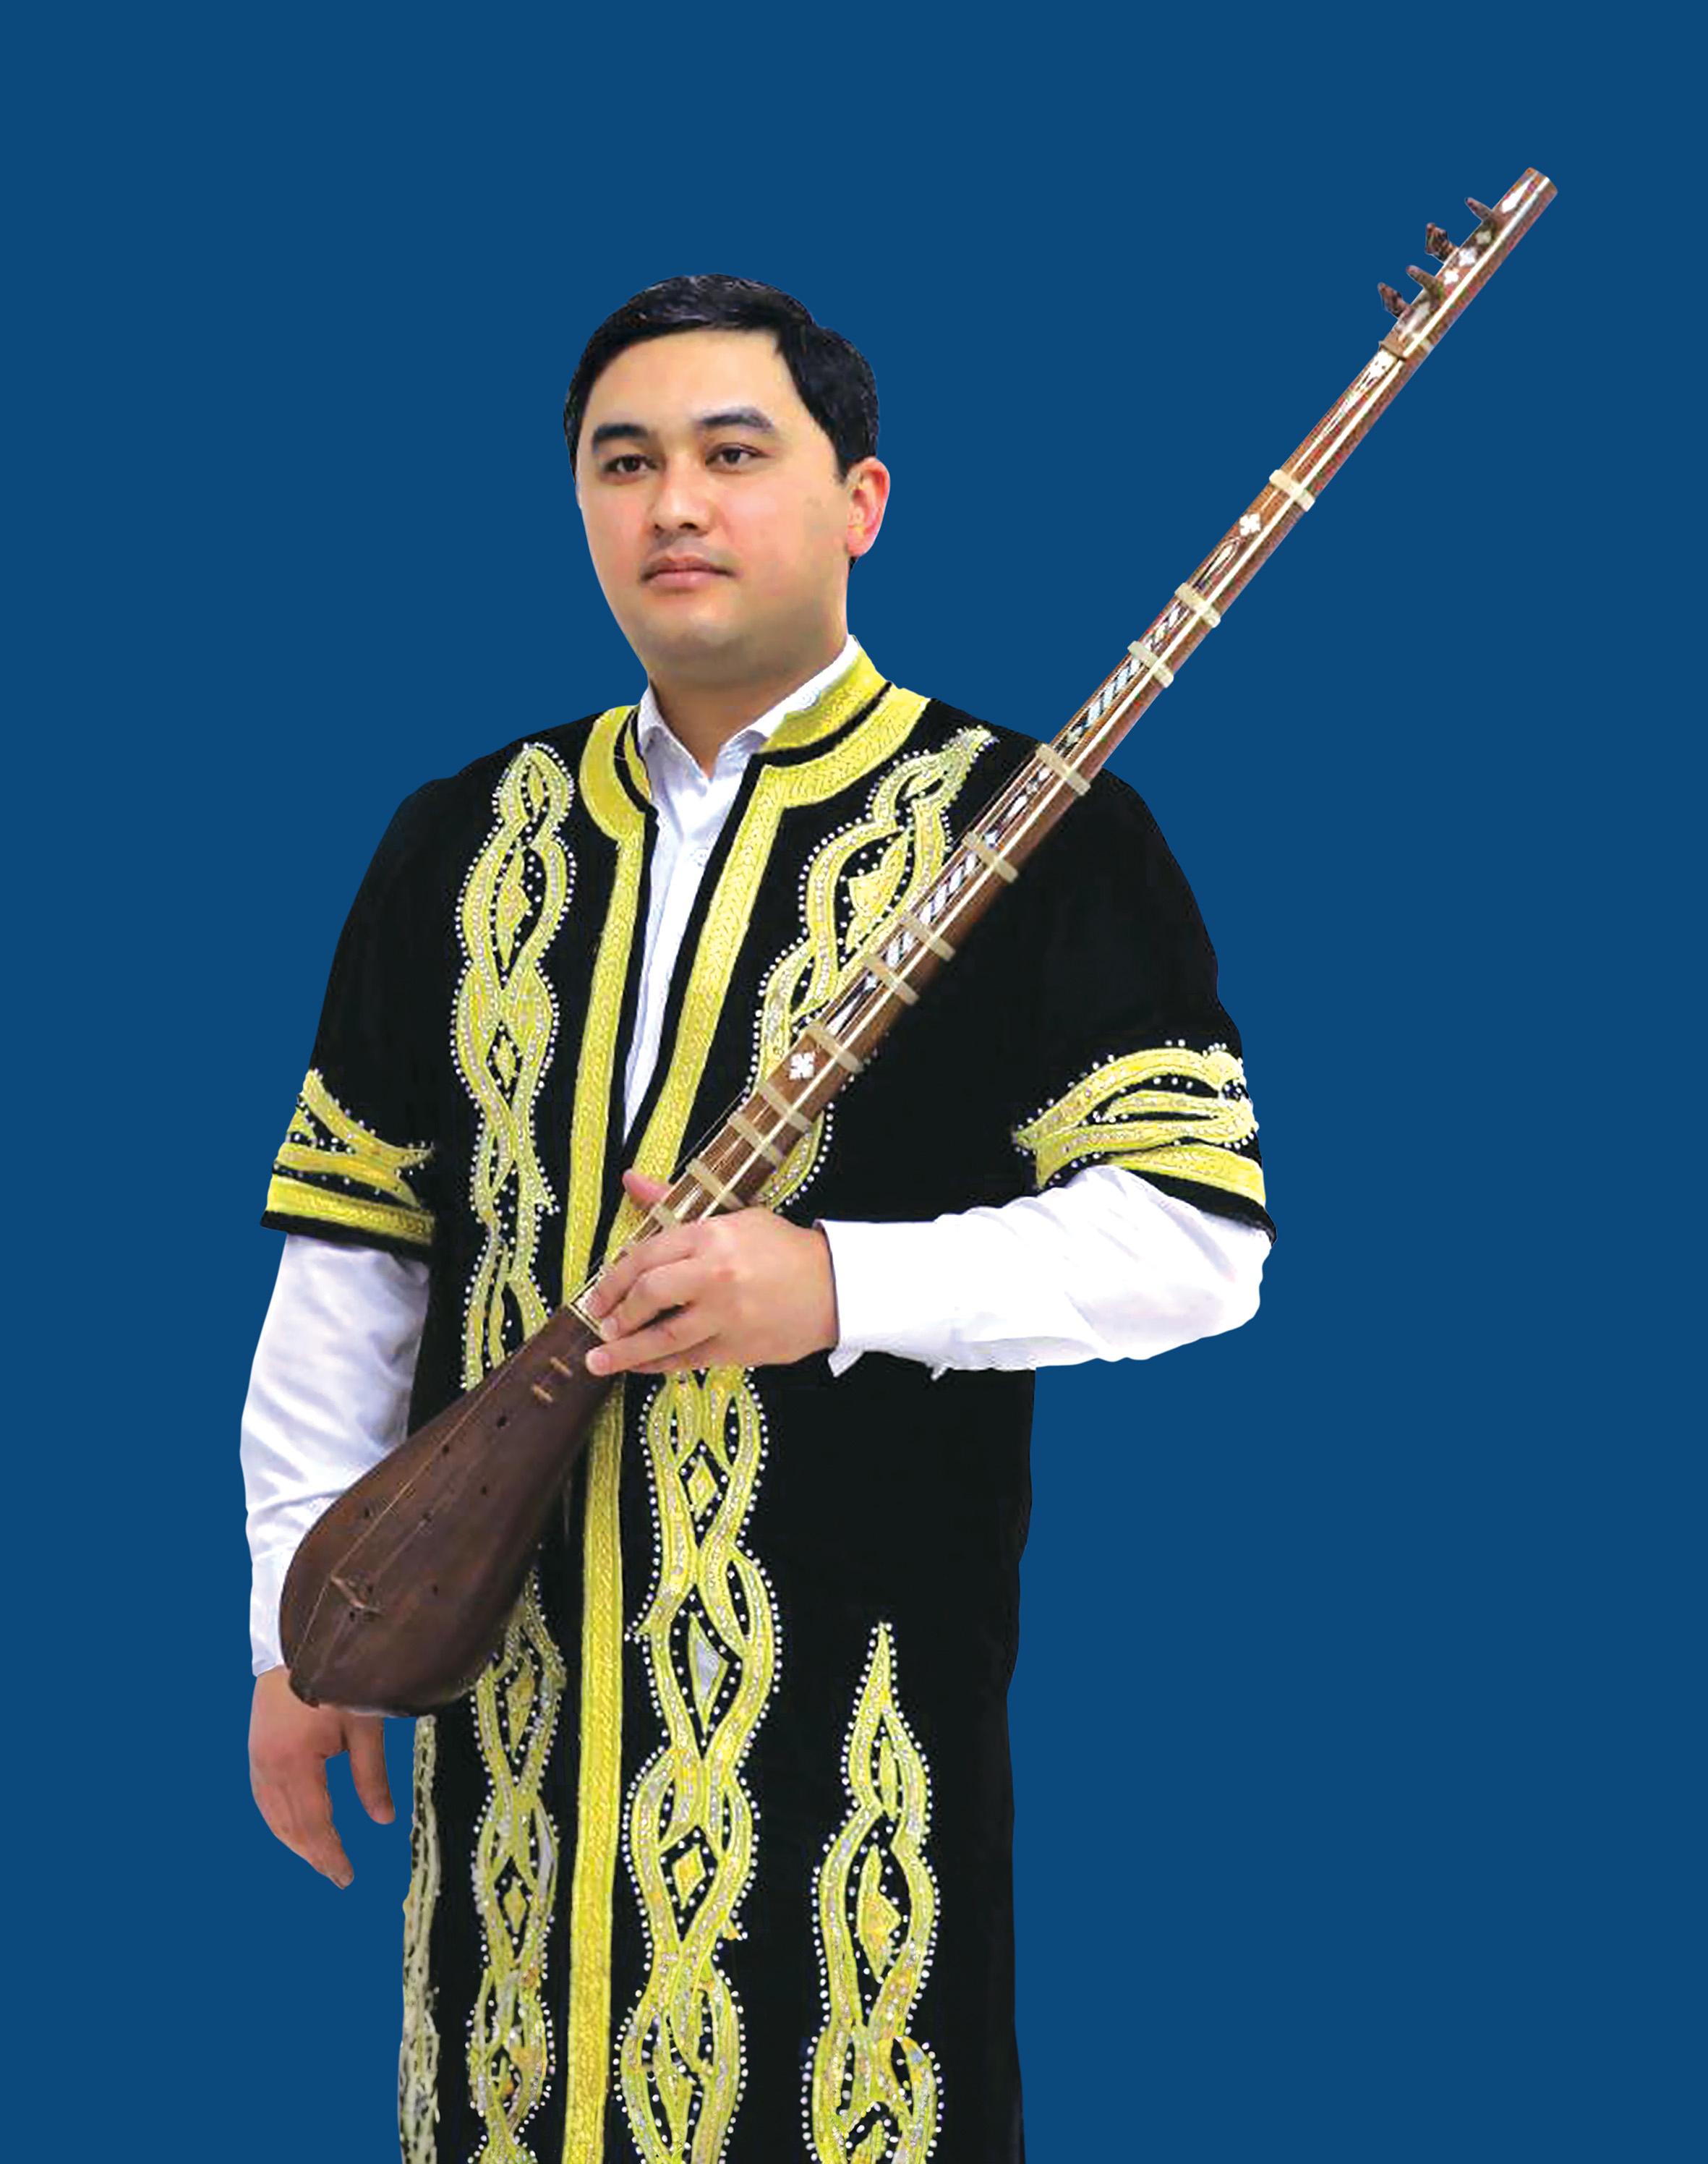 《朱拉耶夫与塔吉克音乐—丝路上的传统与创新》演奏会将于六月十七日举行。图为塔吉克歌手兼音乐家贝赫鲁兹‧奈姆佐达。
